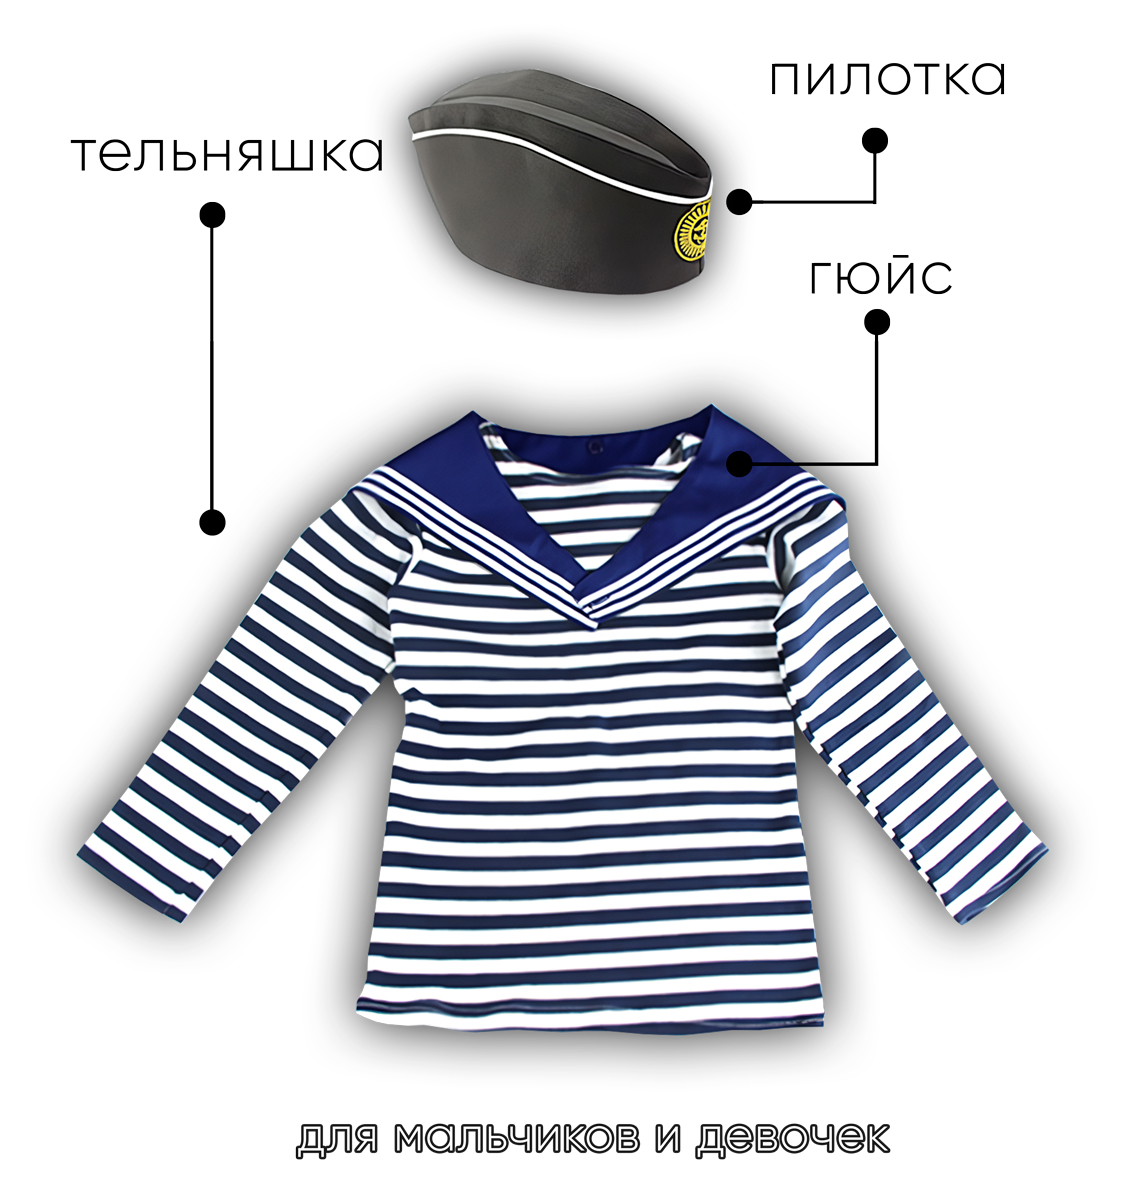 Детский набор матроса для утренника (тельняшка: 36 размер, пилотка детская: 56 размер (на рост 128-134, до 9 лет) и гюйс детский синий)